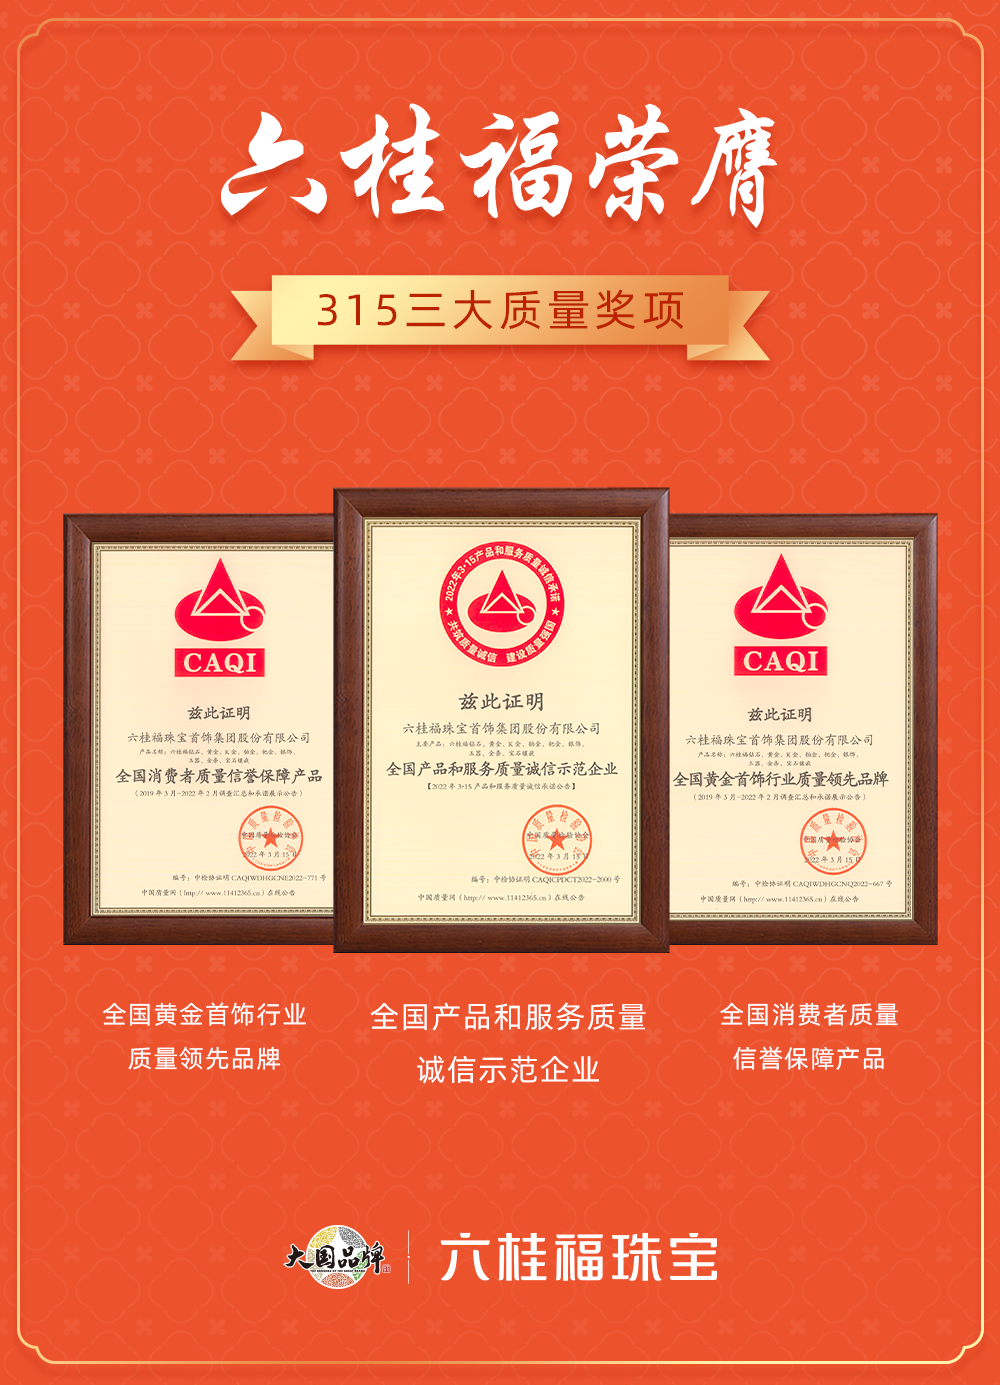 六桂福打造行业质量标杆，荣膺315三大权威奖项